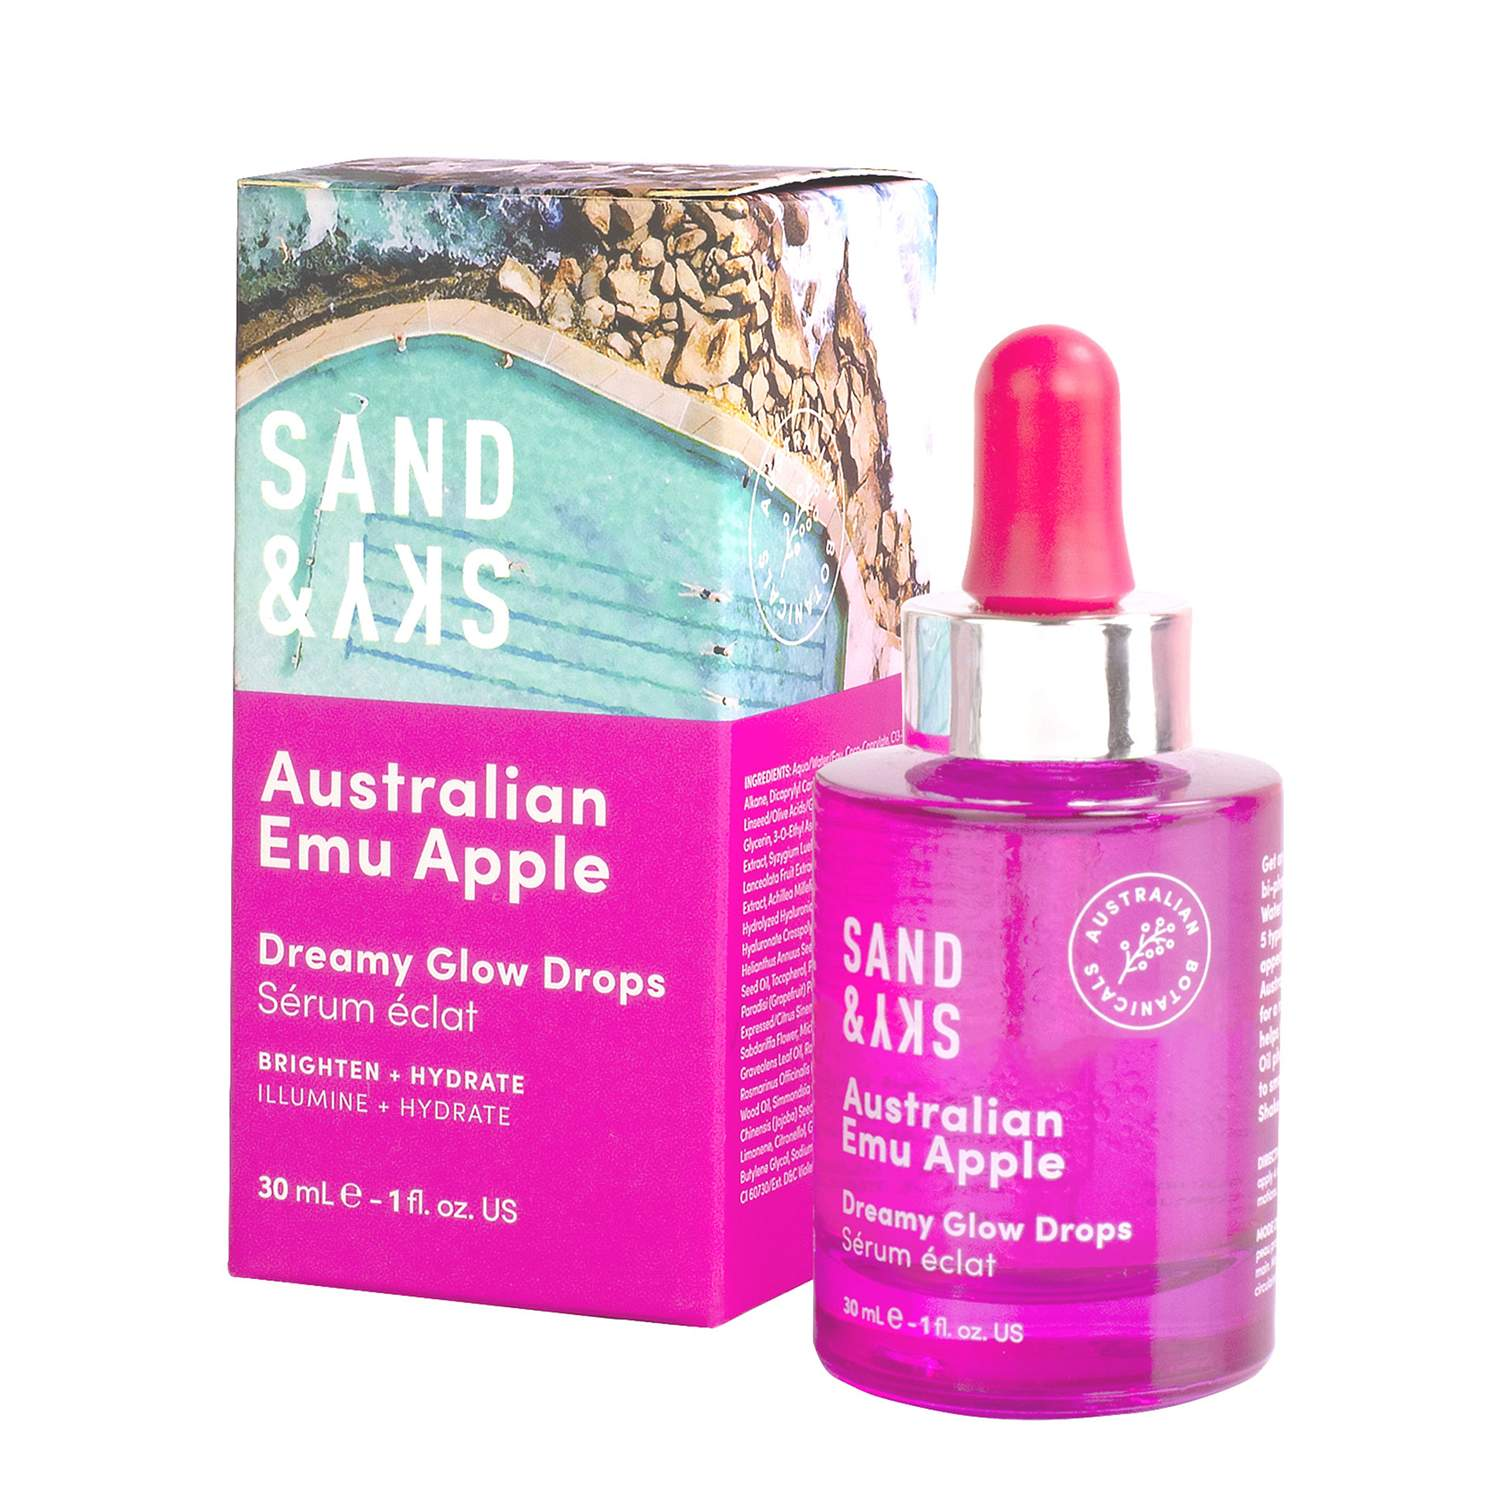 Sand & Sky Australian Emu Apple Dreamy Glow Drops Sand & Sky Australian Emu Apple Dreamy Glow Drops 1